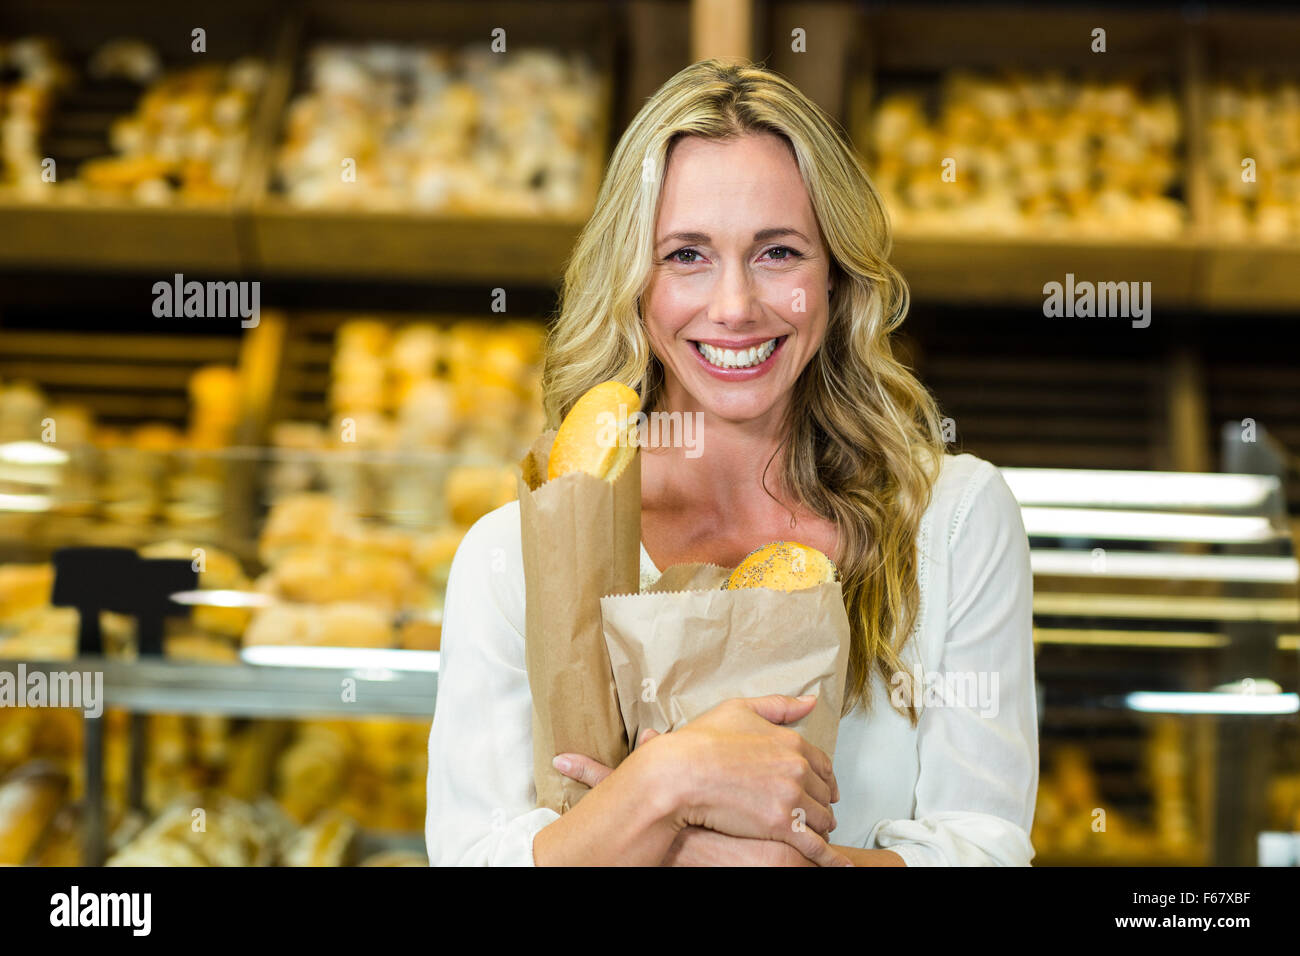 Beautiful woman holding paper bag avec du pain Banque D'Images